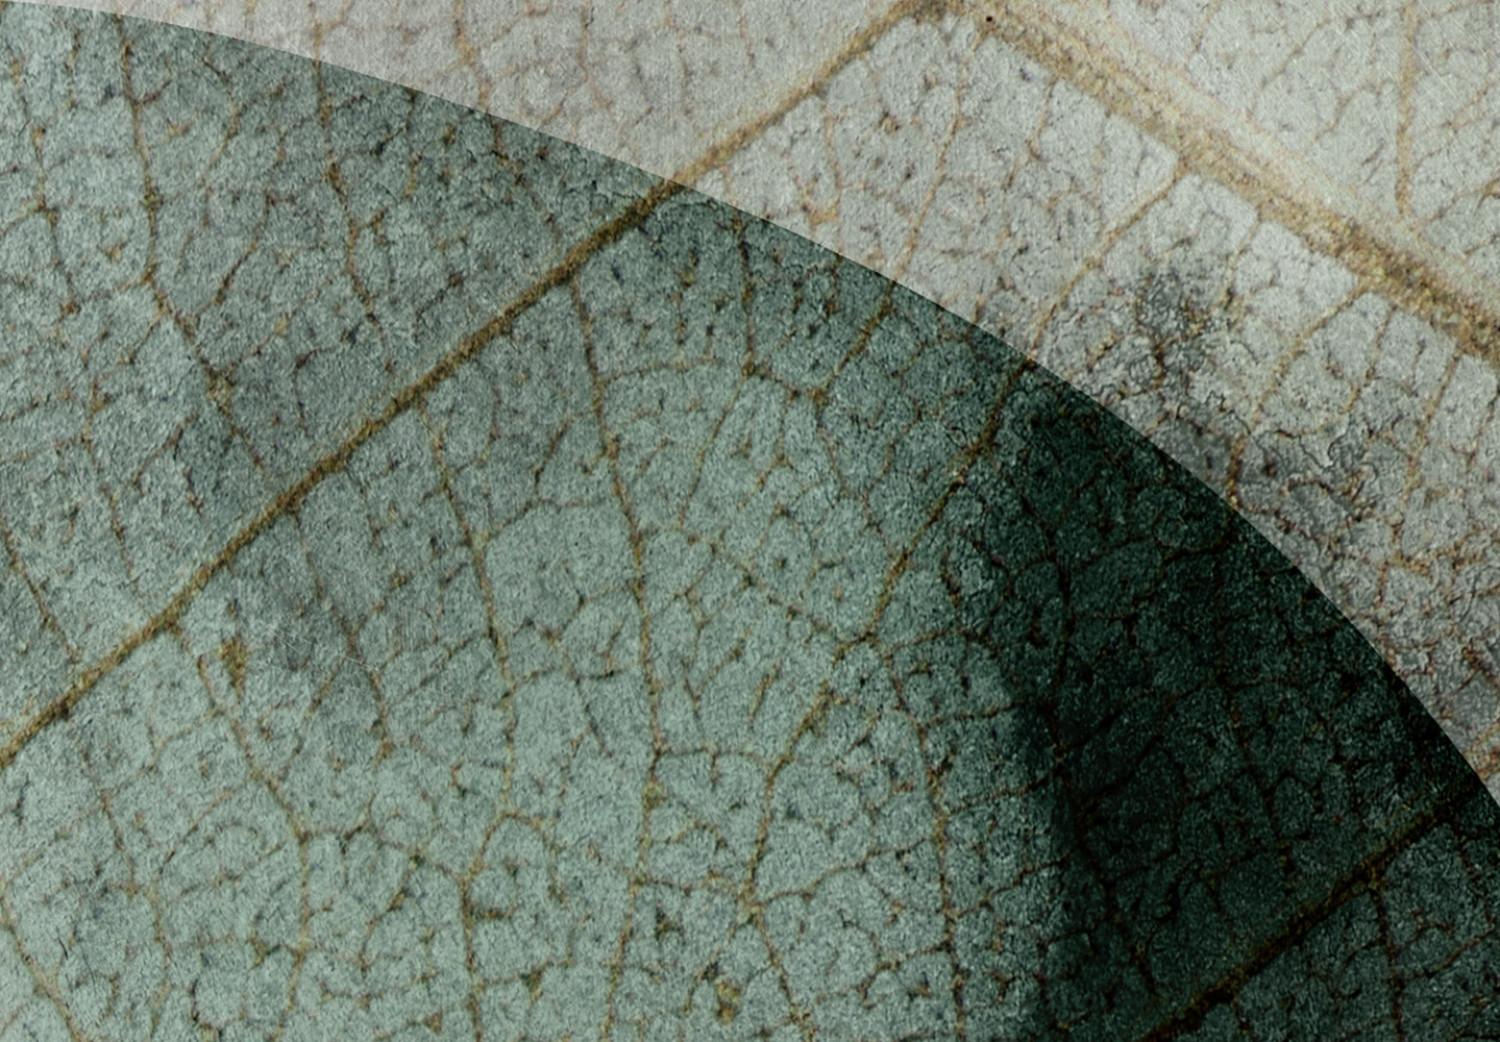 Cuadro Dos grandes hojas - motivos florales abstractos sobre fondo beige